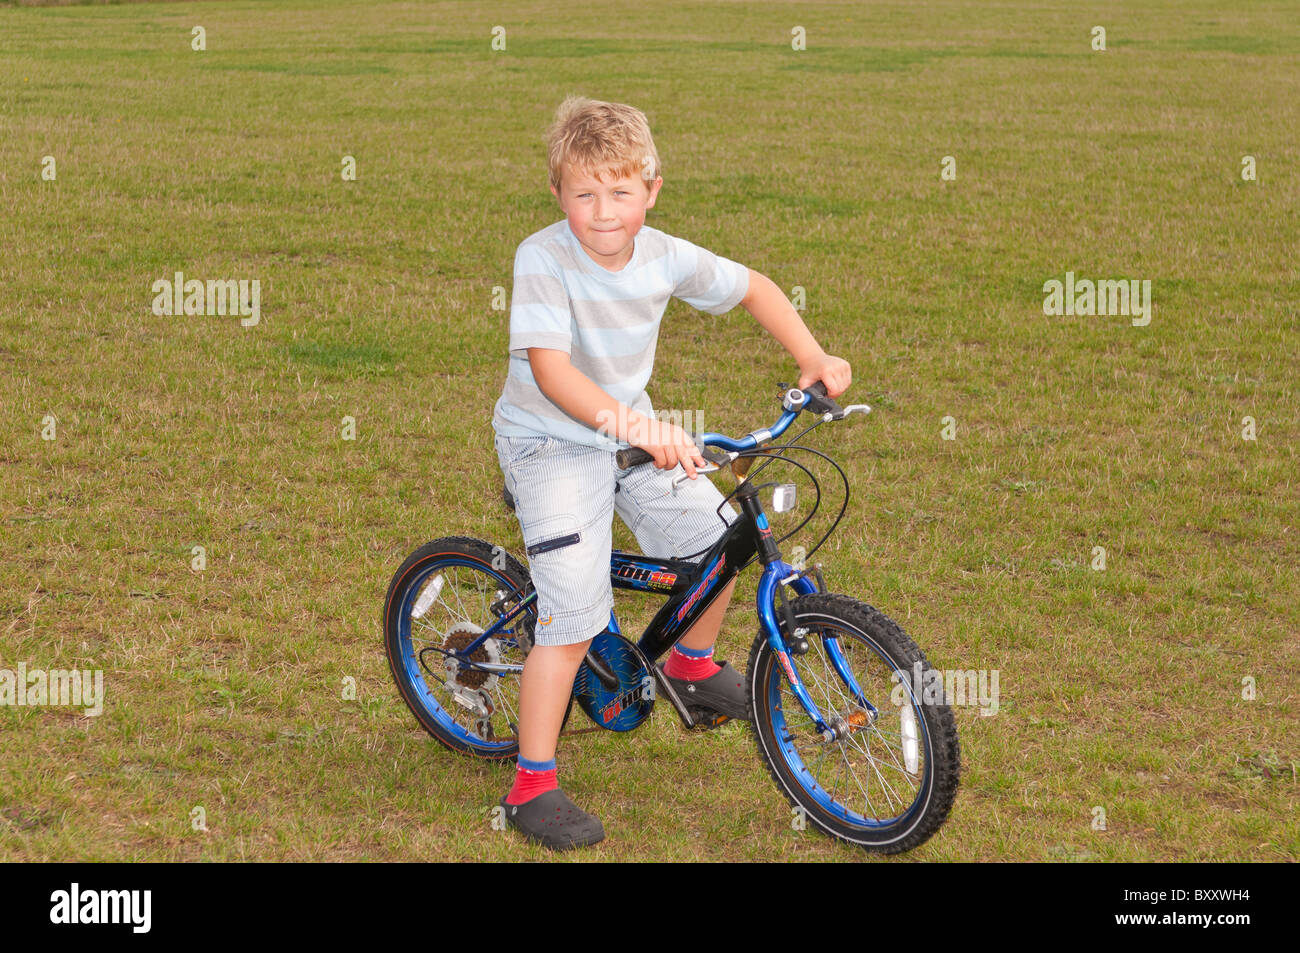 Un modèle a publié la photo d'un garçon de 7 ans le vélo au Royaume-Uni Banque D'Images